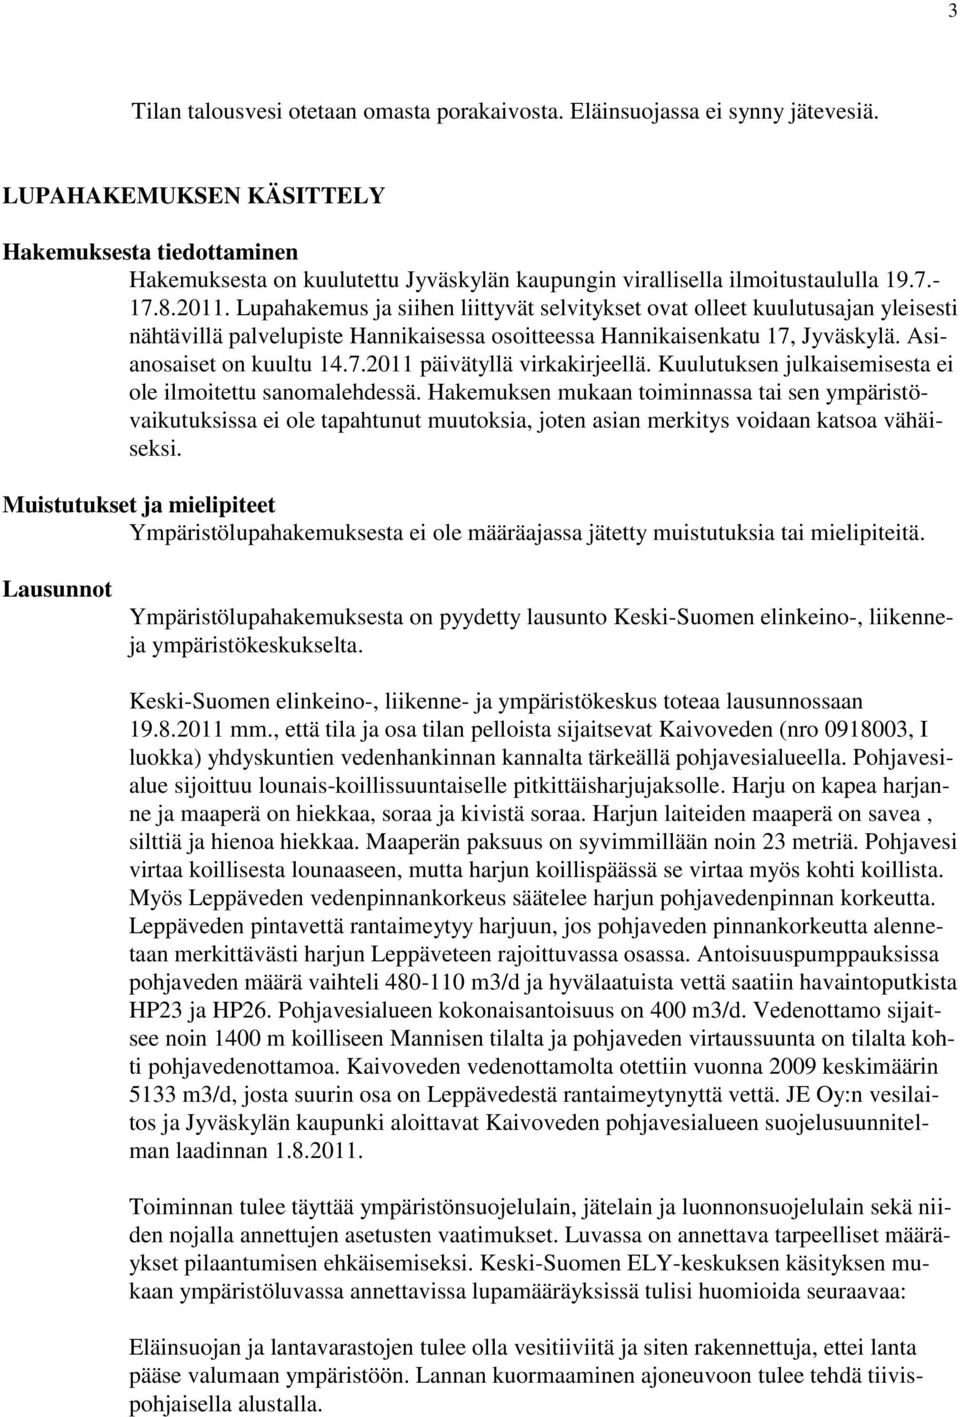 Lupahakemus ja siihen liittyvät selvitykset ovat olleet kuulutusajan yleisesti nähtävillä palvelupiste Hannikaisessa osoitteessa Hannikaisenkatu 17, Jyväskylä. Asianosaiset on kuultu 14.7.2011 päivätyllä virkakirjeellä.